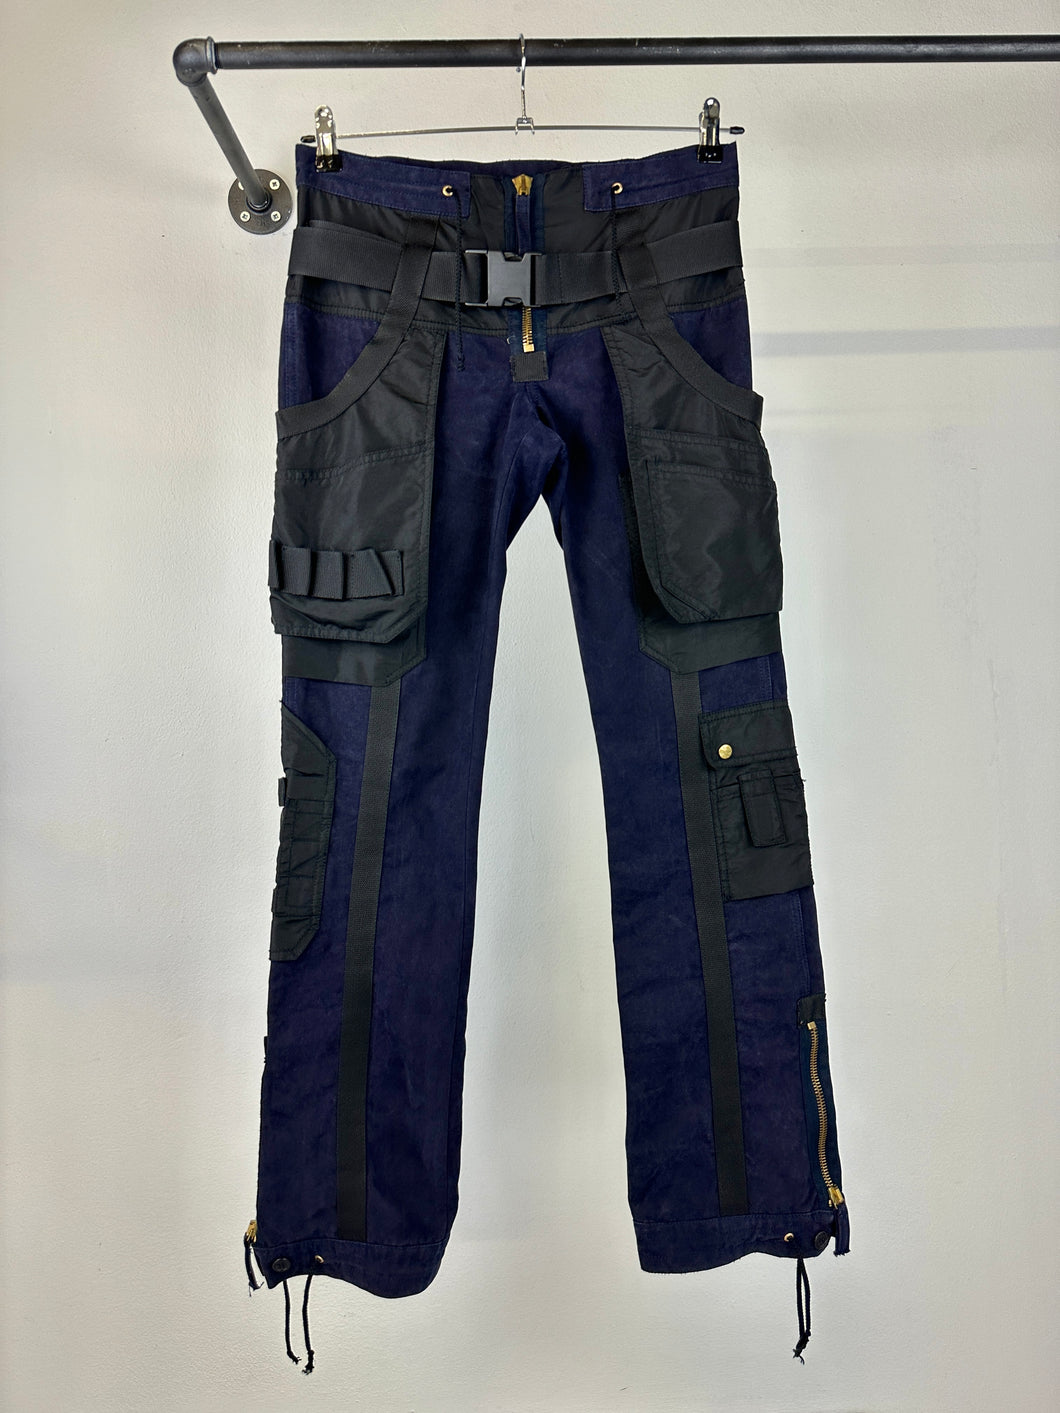 AW2003 Jean Paul Gaultier parachute bondage pants